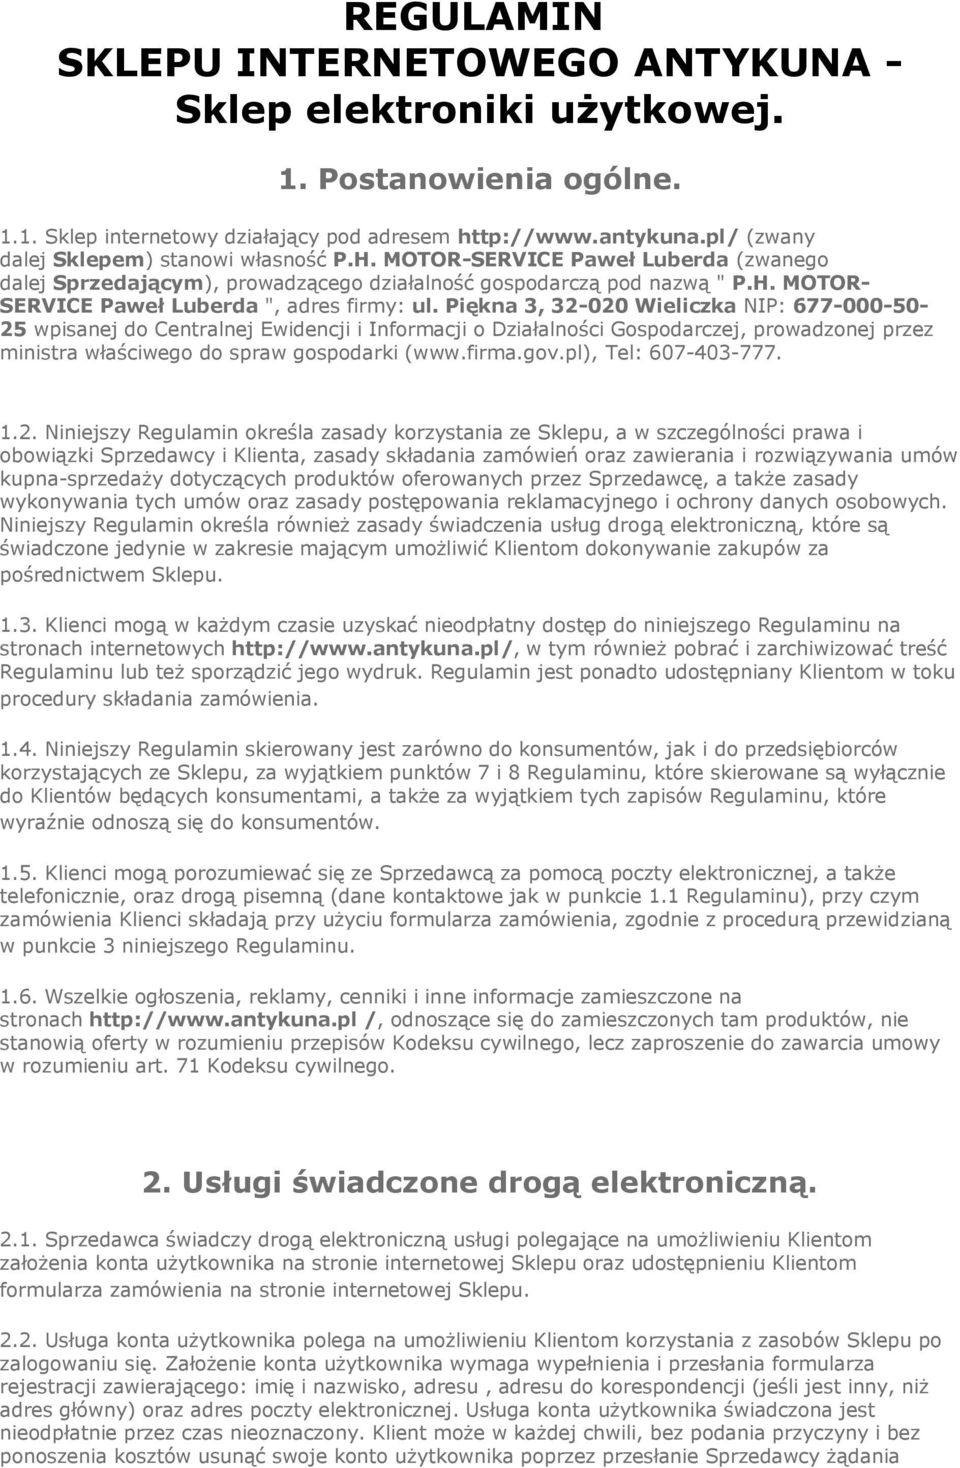 Piękna 3, 32-020 Wieliczka NIP: 677-000-50-25 wpisanej do Centralnej Ewidencji i Informacji o Działalności Gospodarczej, prowadzonej przez ministra właściwego do spraw gospodarki (www.firma.gov.